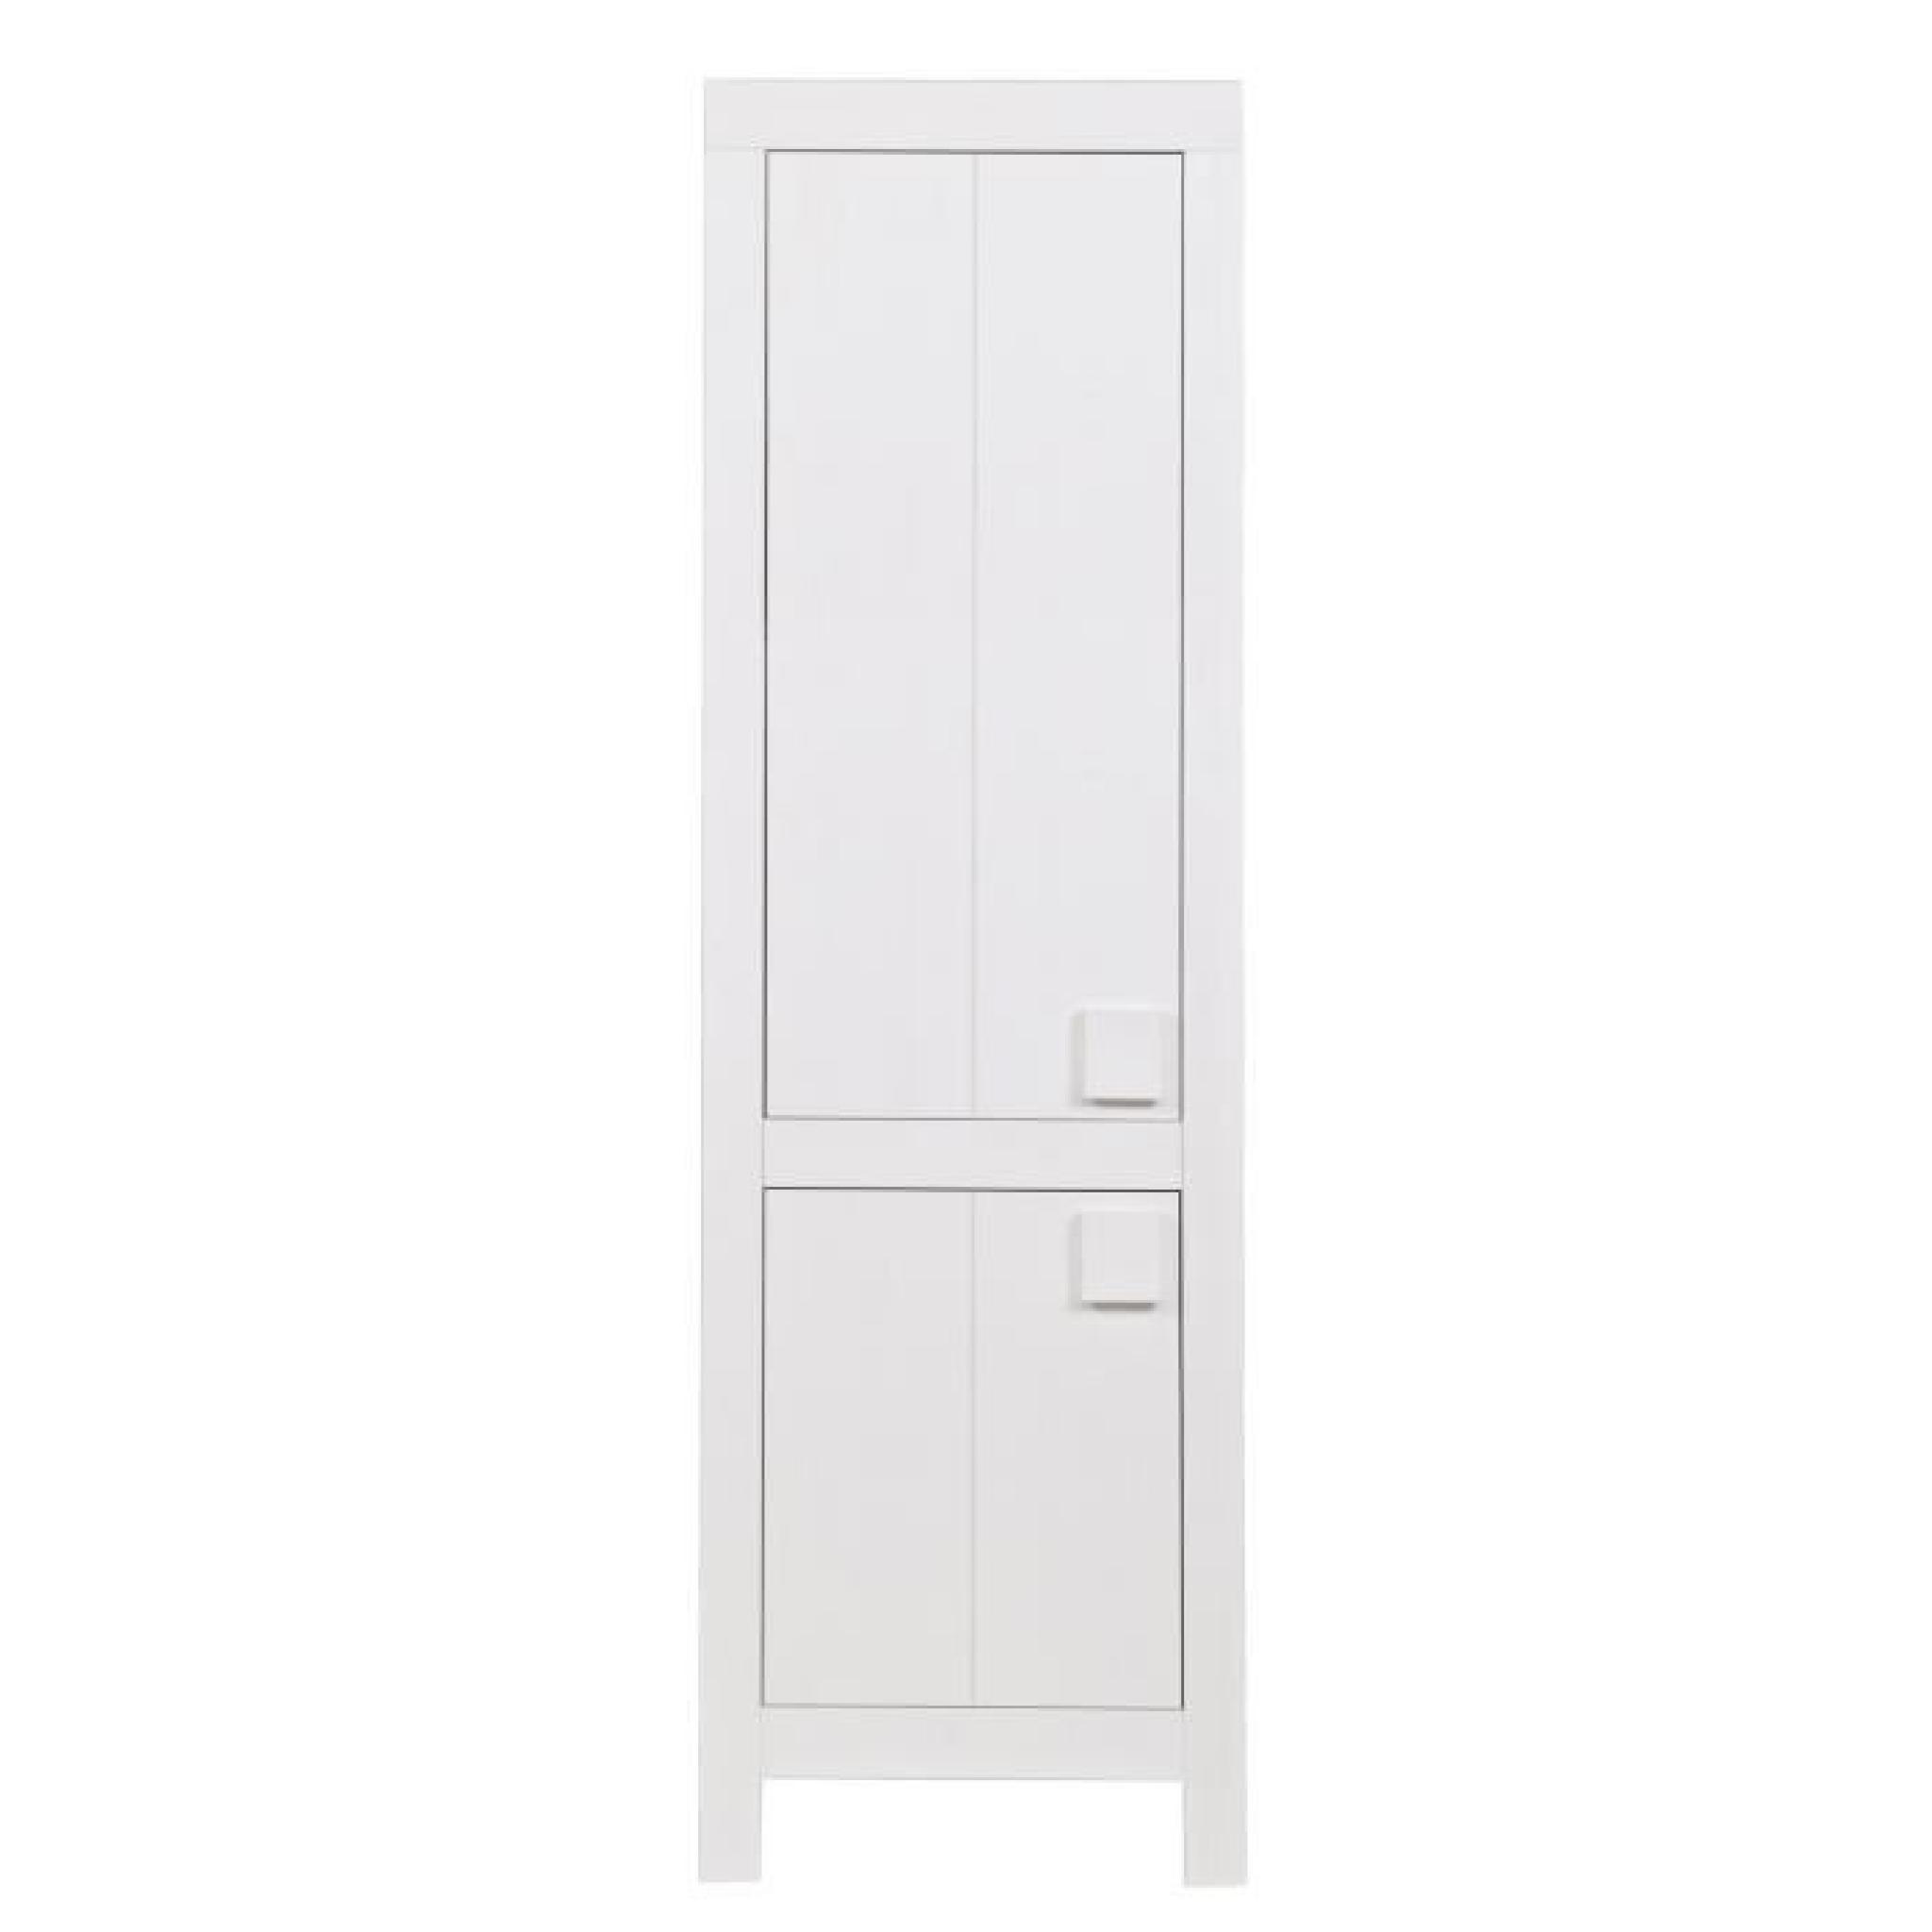 Armoire 2 portes pin brosse blanc, H200 x L60 x P37 cm